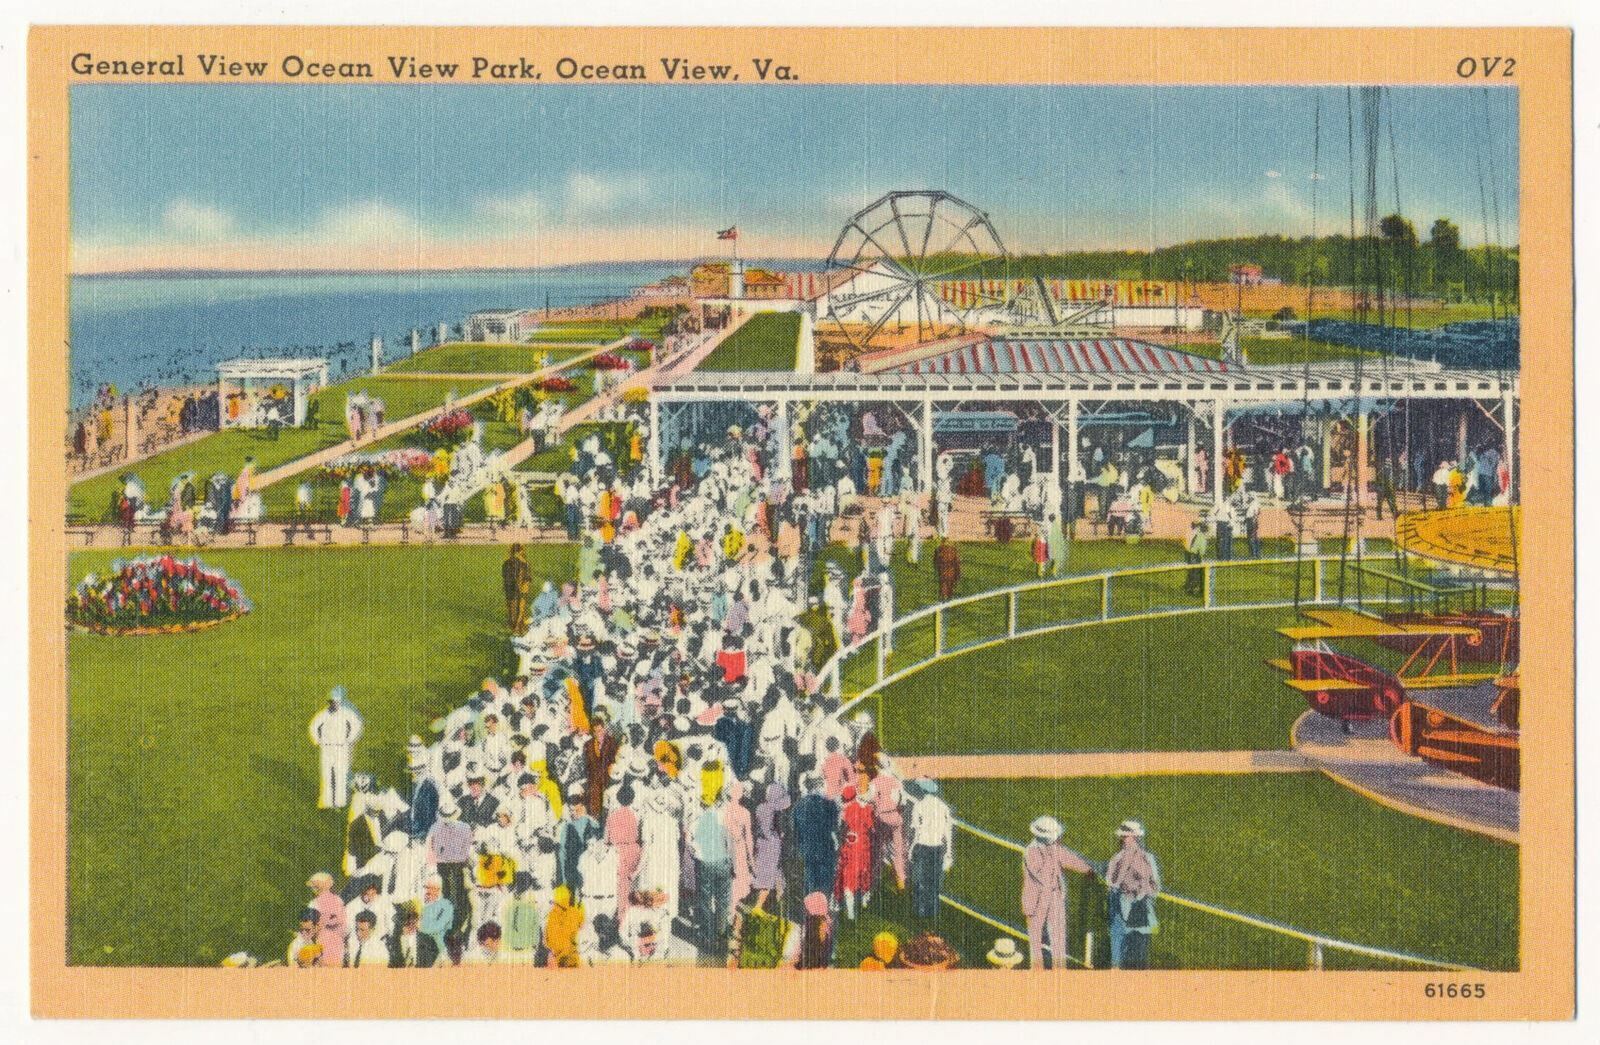 Ocean View Amusement Park, Ocean View, Virginia